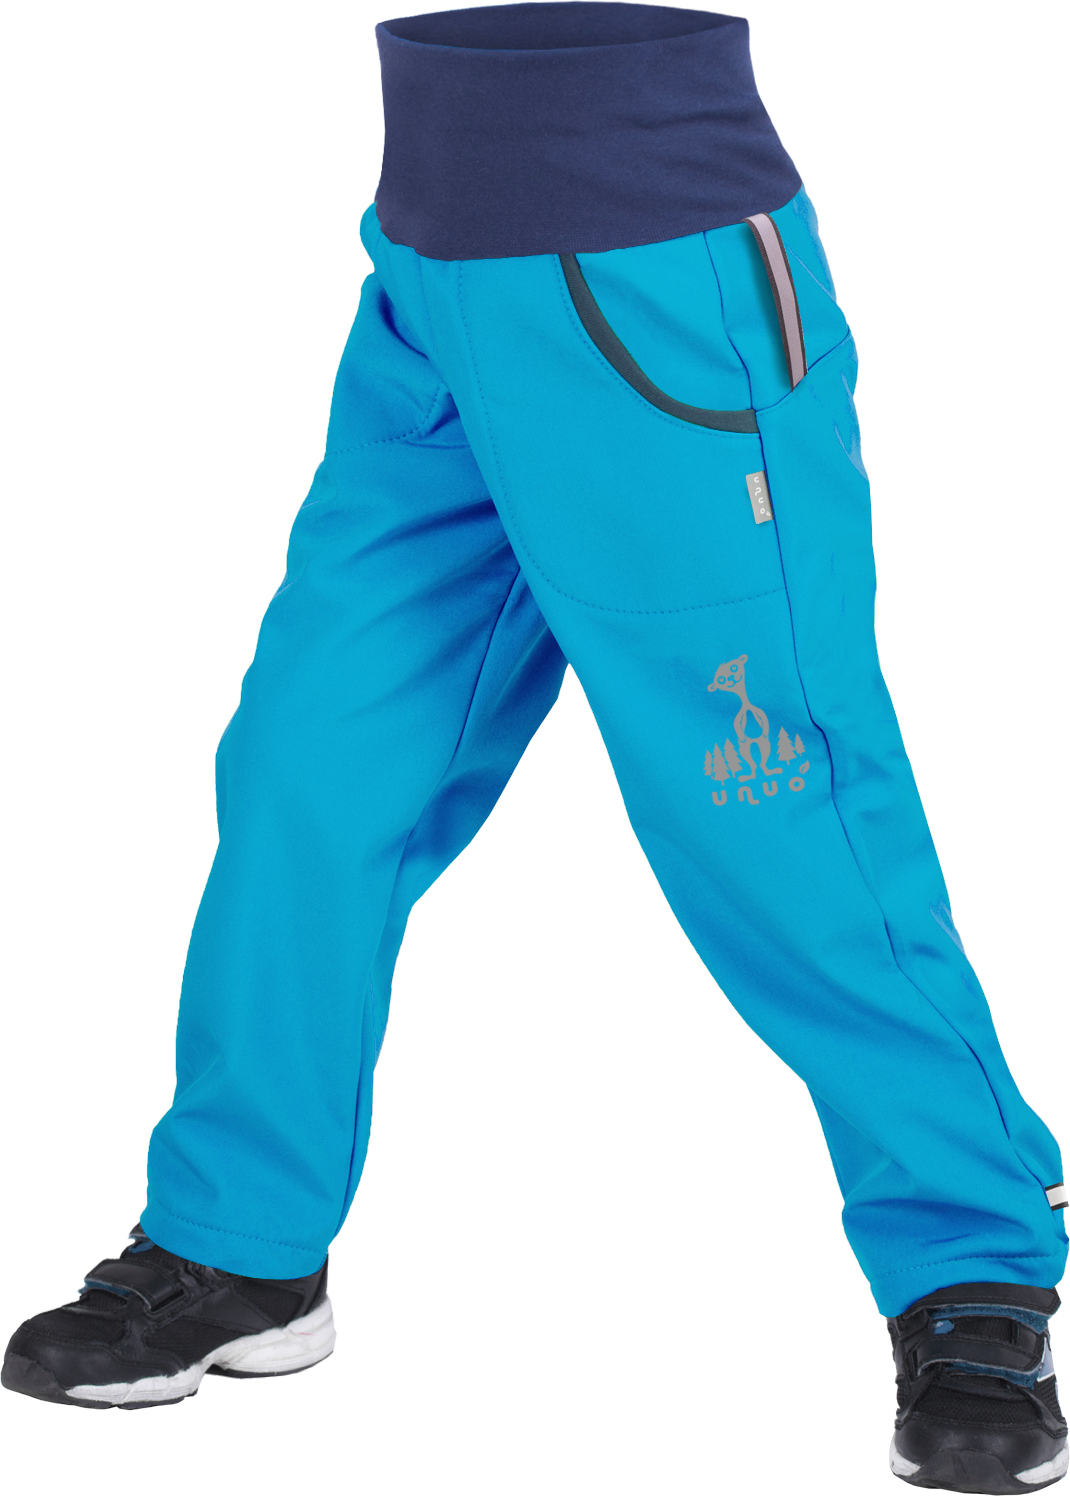 Dětské softshellové kalhoty UNUO s fleecem Tyrkysové + reflexní obrázek Evžen (Softshell kids trousers) Velikost: 110/116